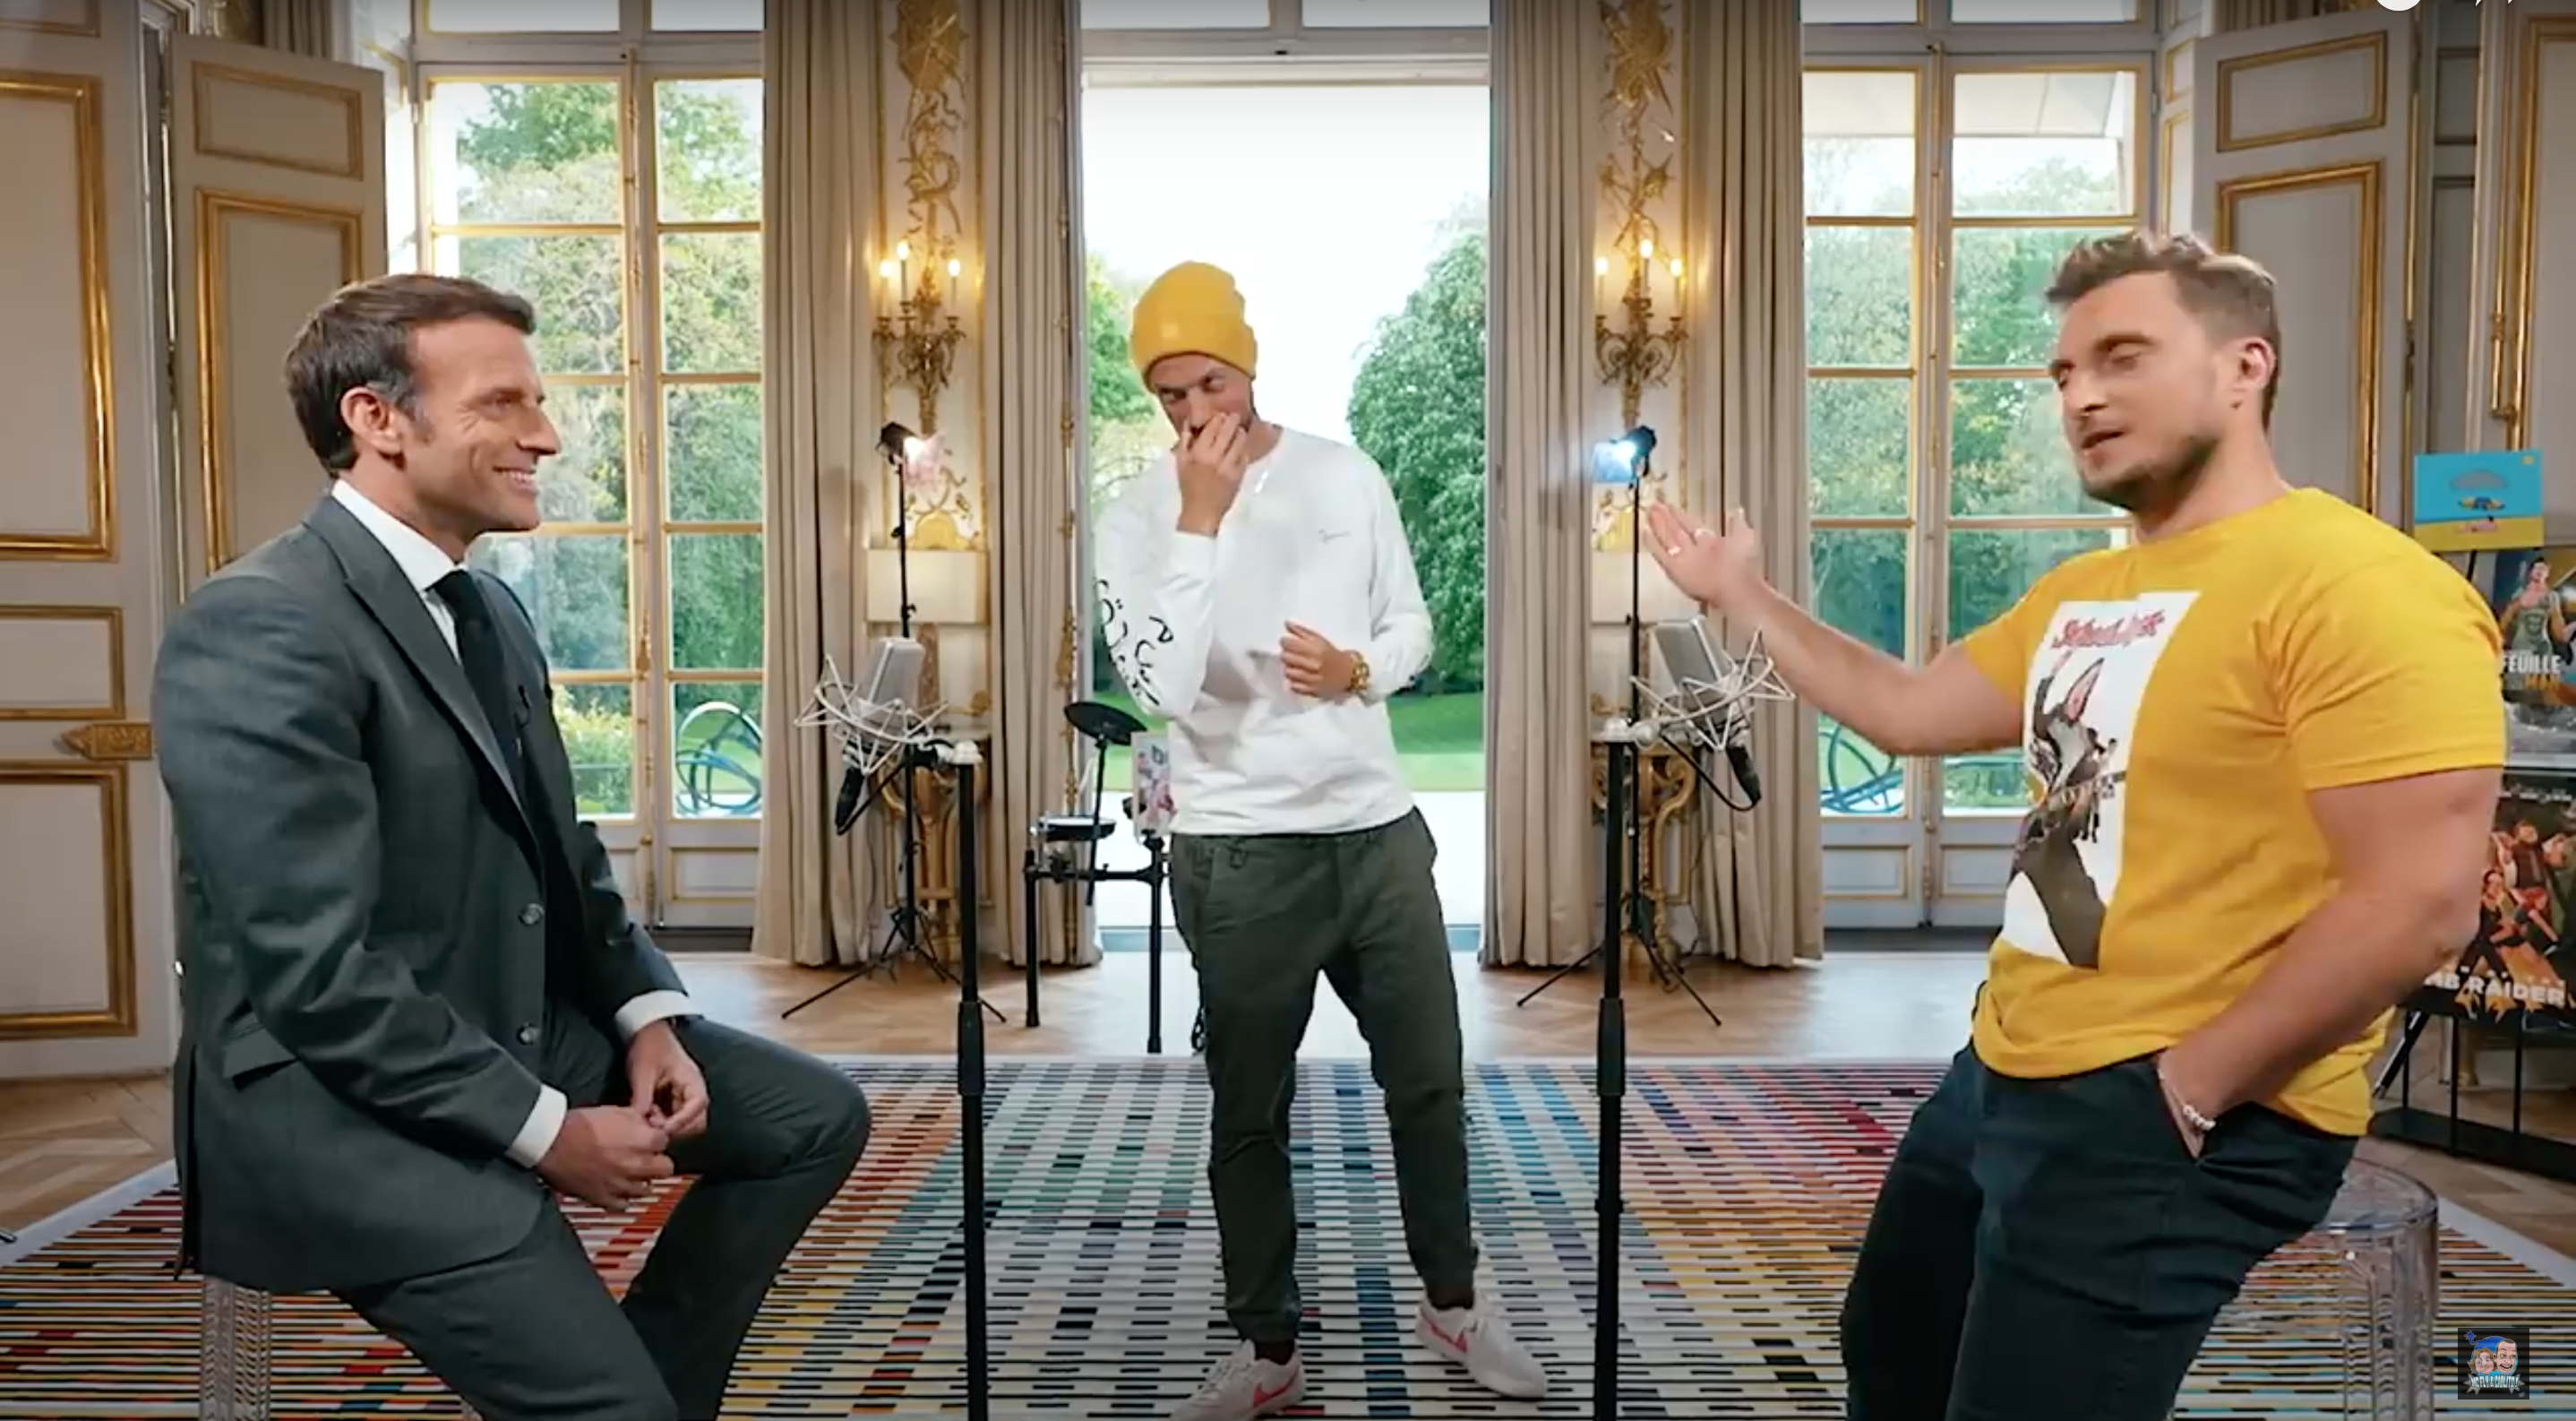 Mcfly et Carlito avec Emmanuel Macron : les rushs de leur vidéo ont été volés !